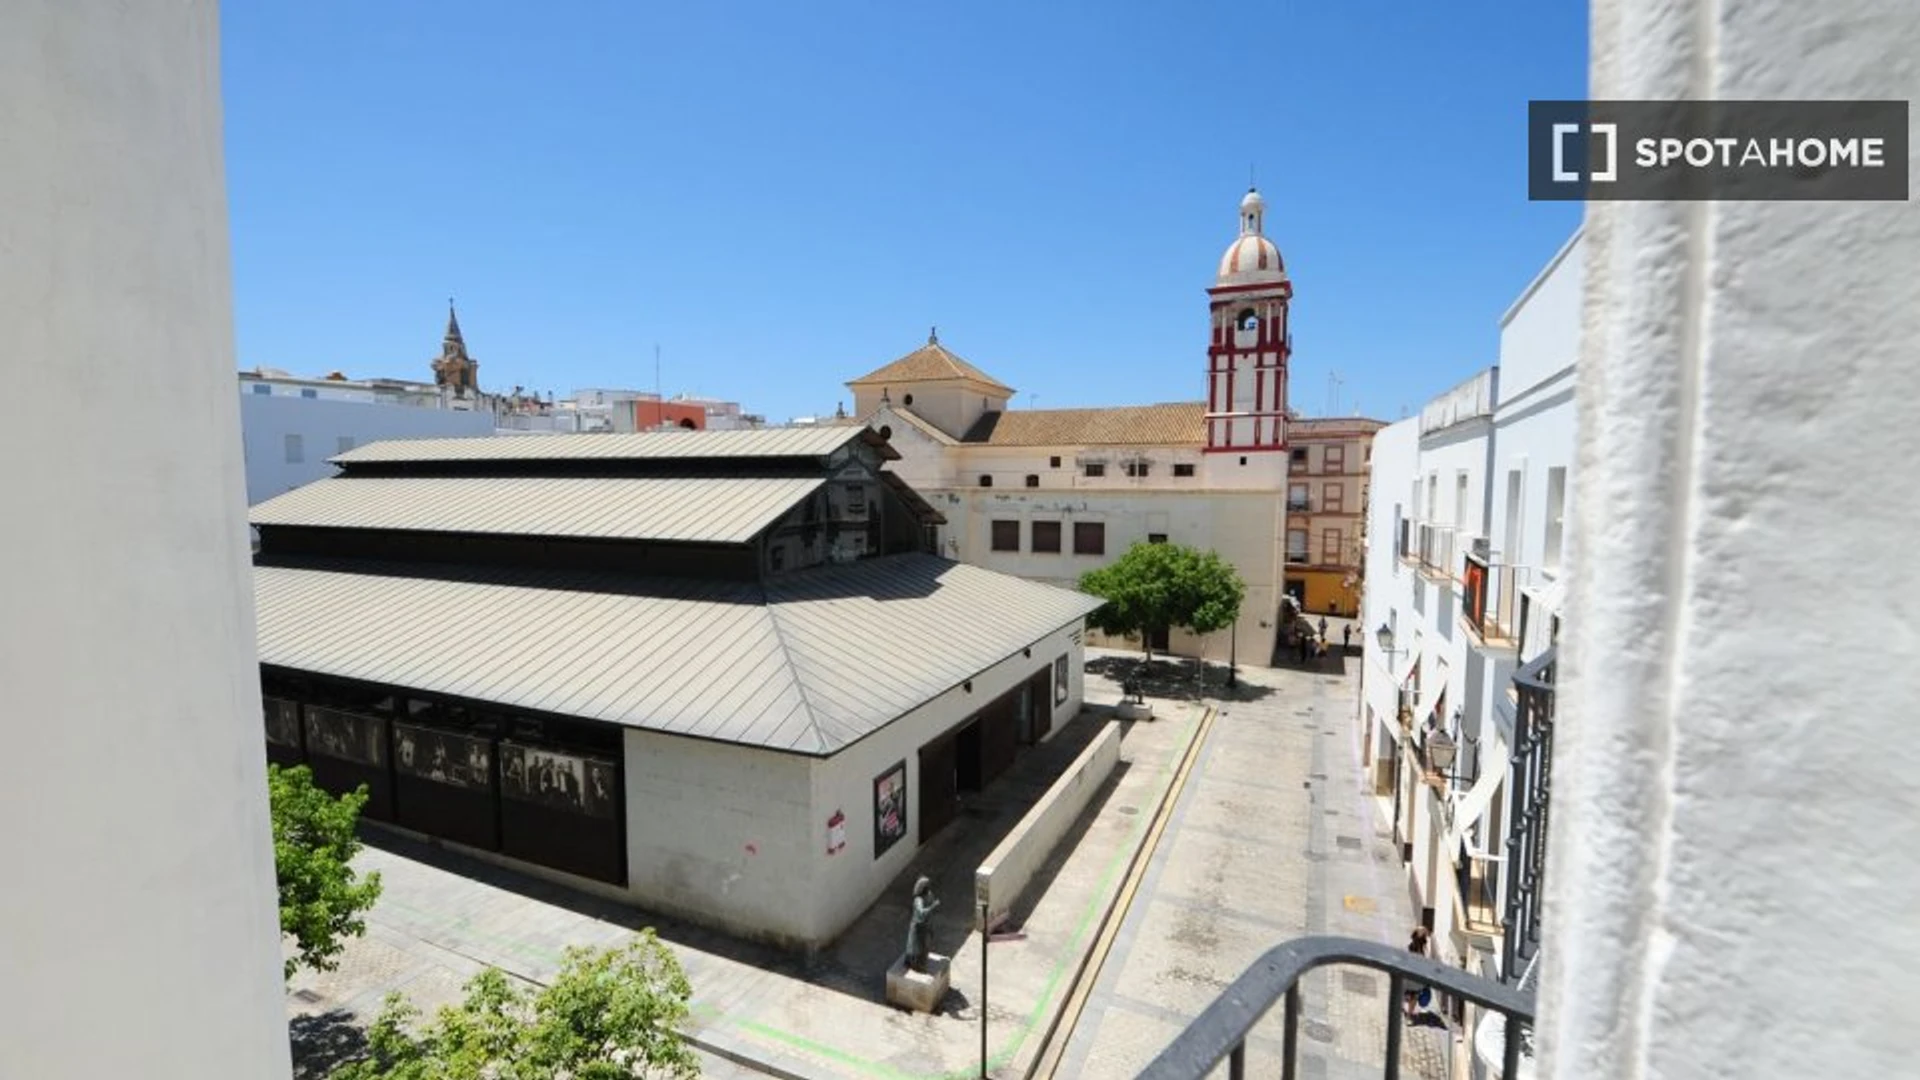 Stanze affittabili mensilmente a Cádiz